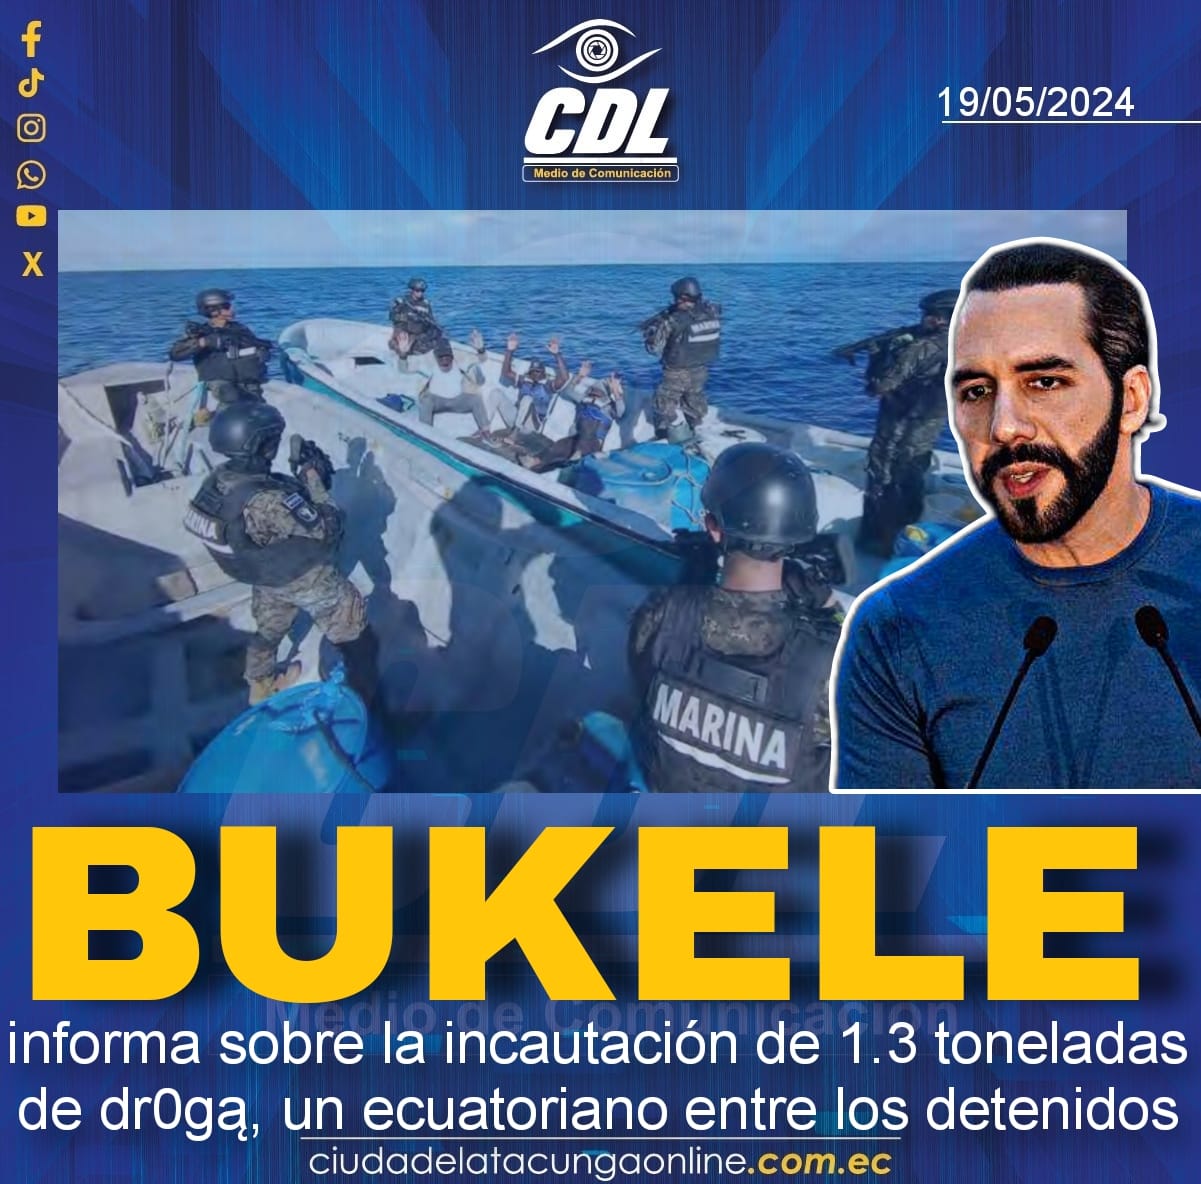 Bukele informa sobre la incautacion de 1.3 toneladas de dr0gą, un ecuatoriano entre los detenidos